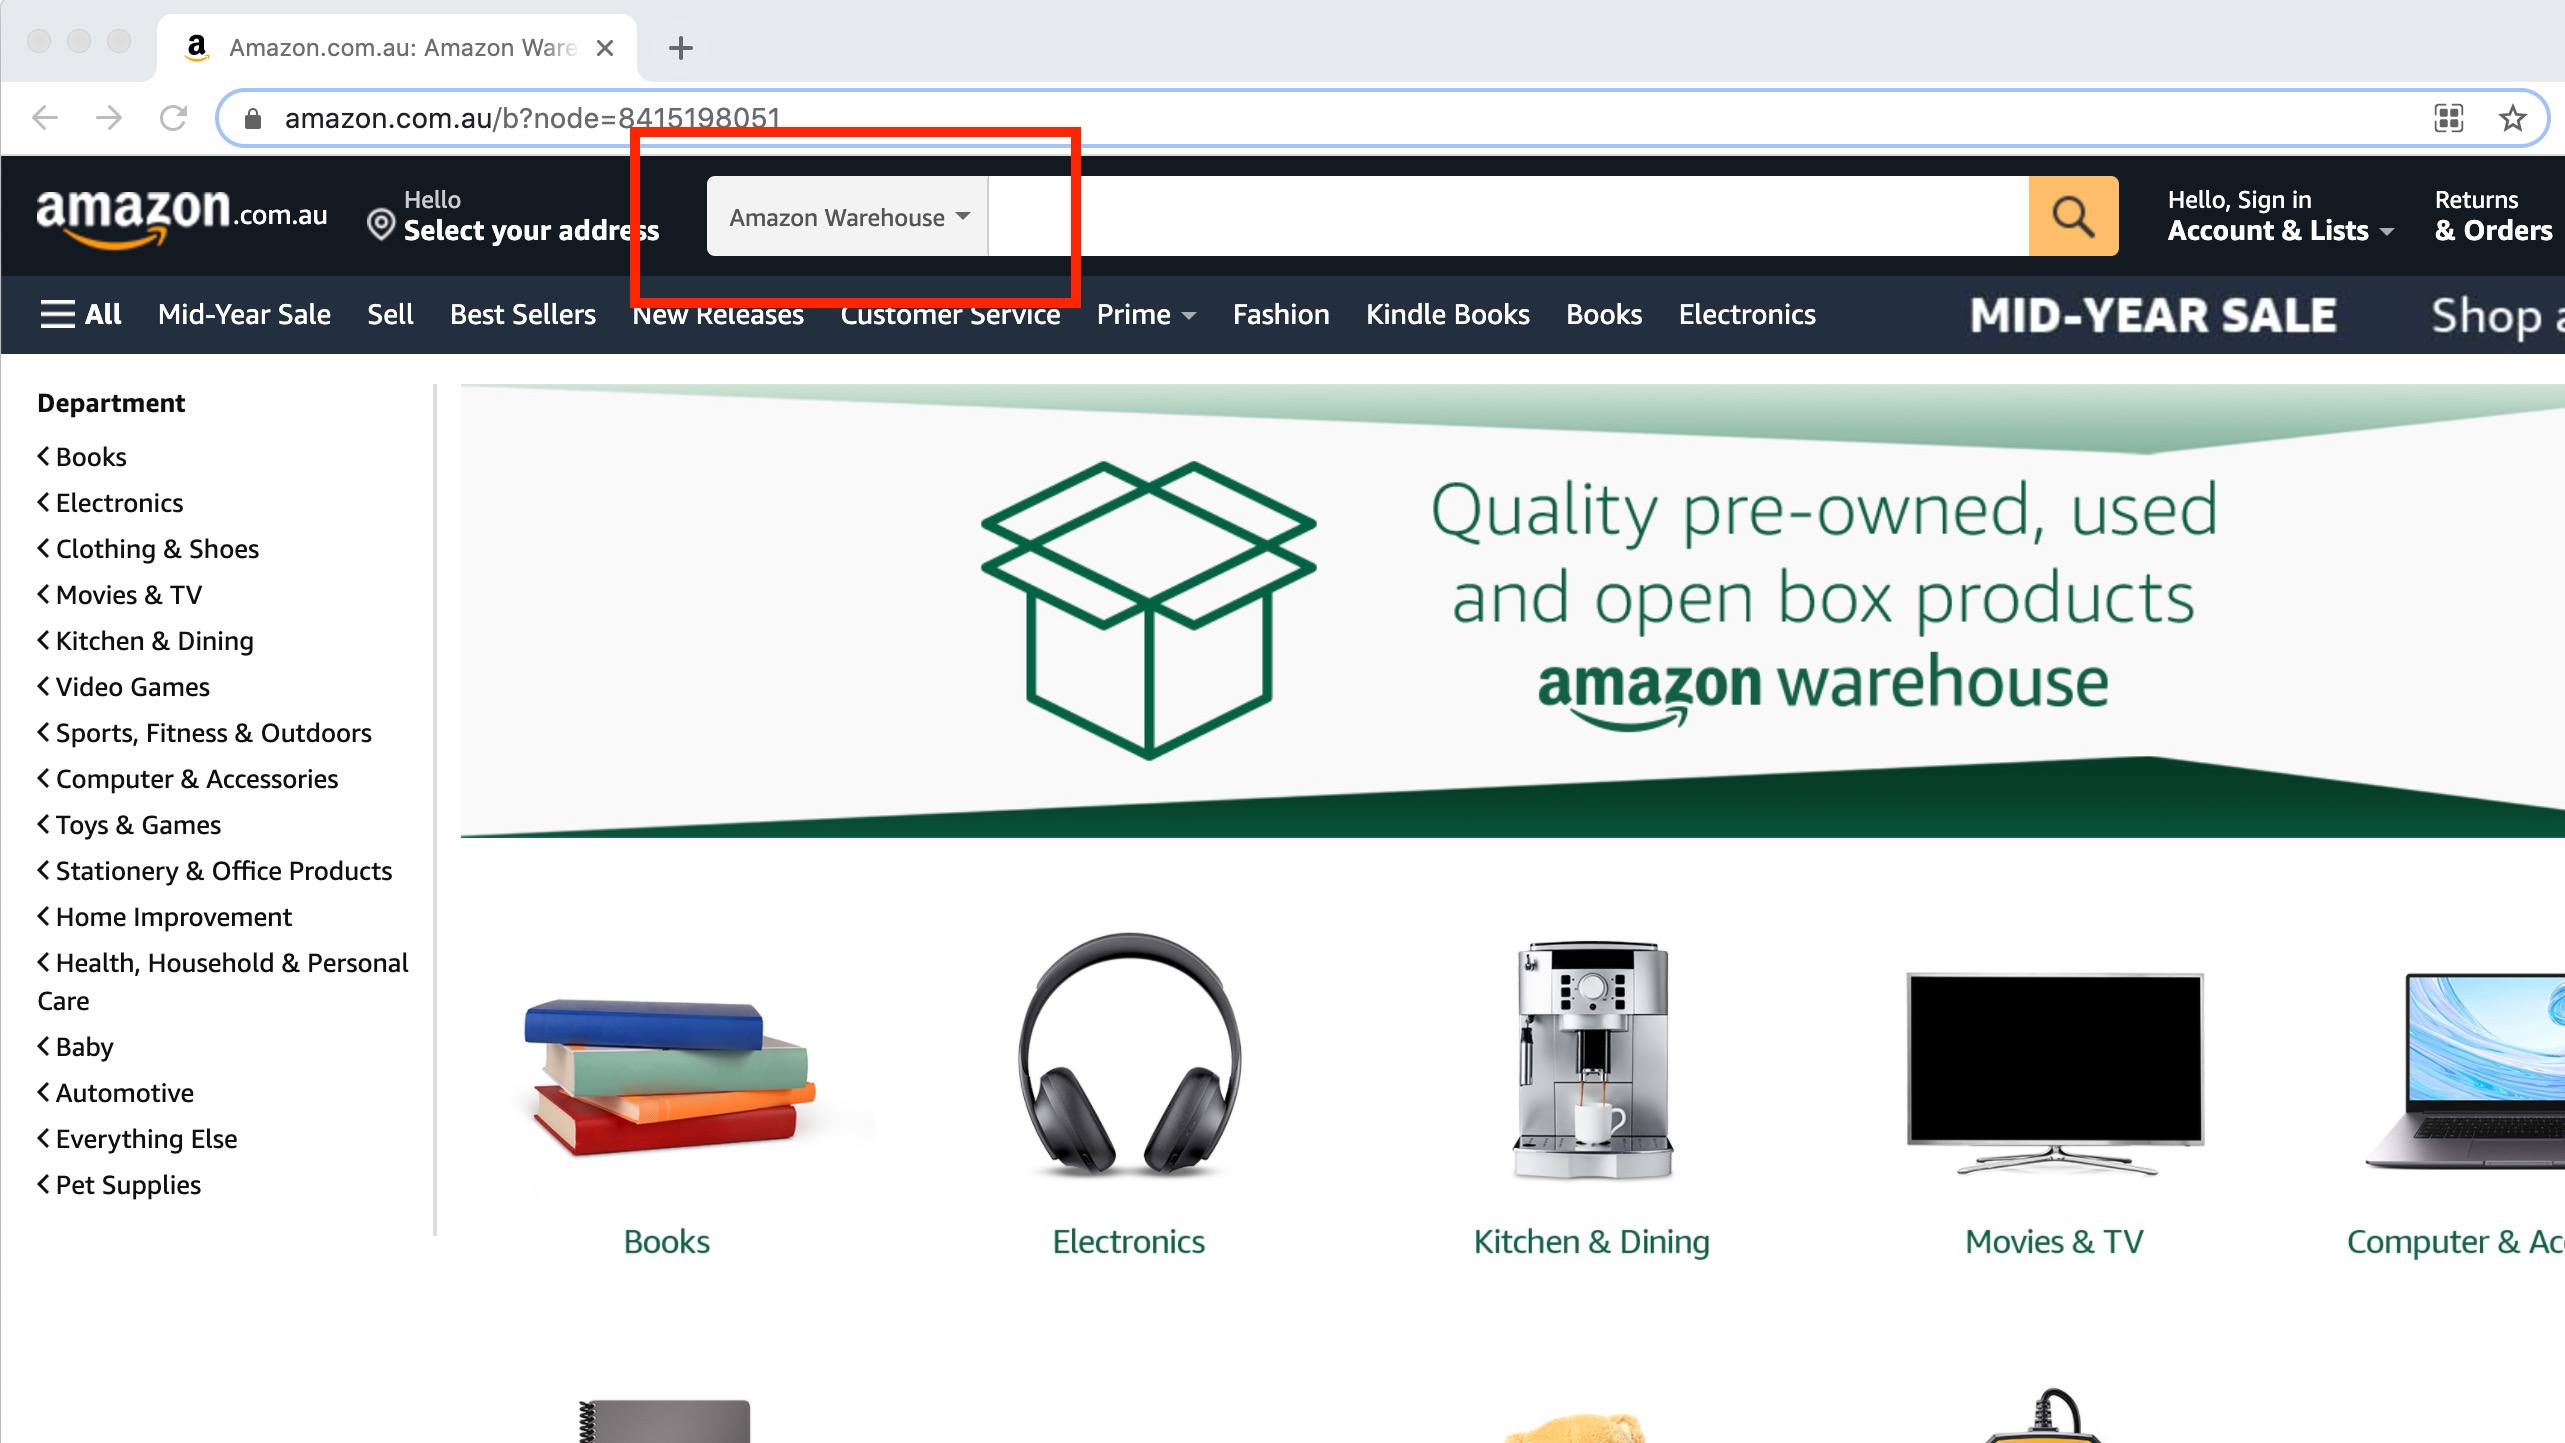 Amazon Warehouse search bar